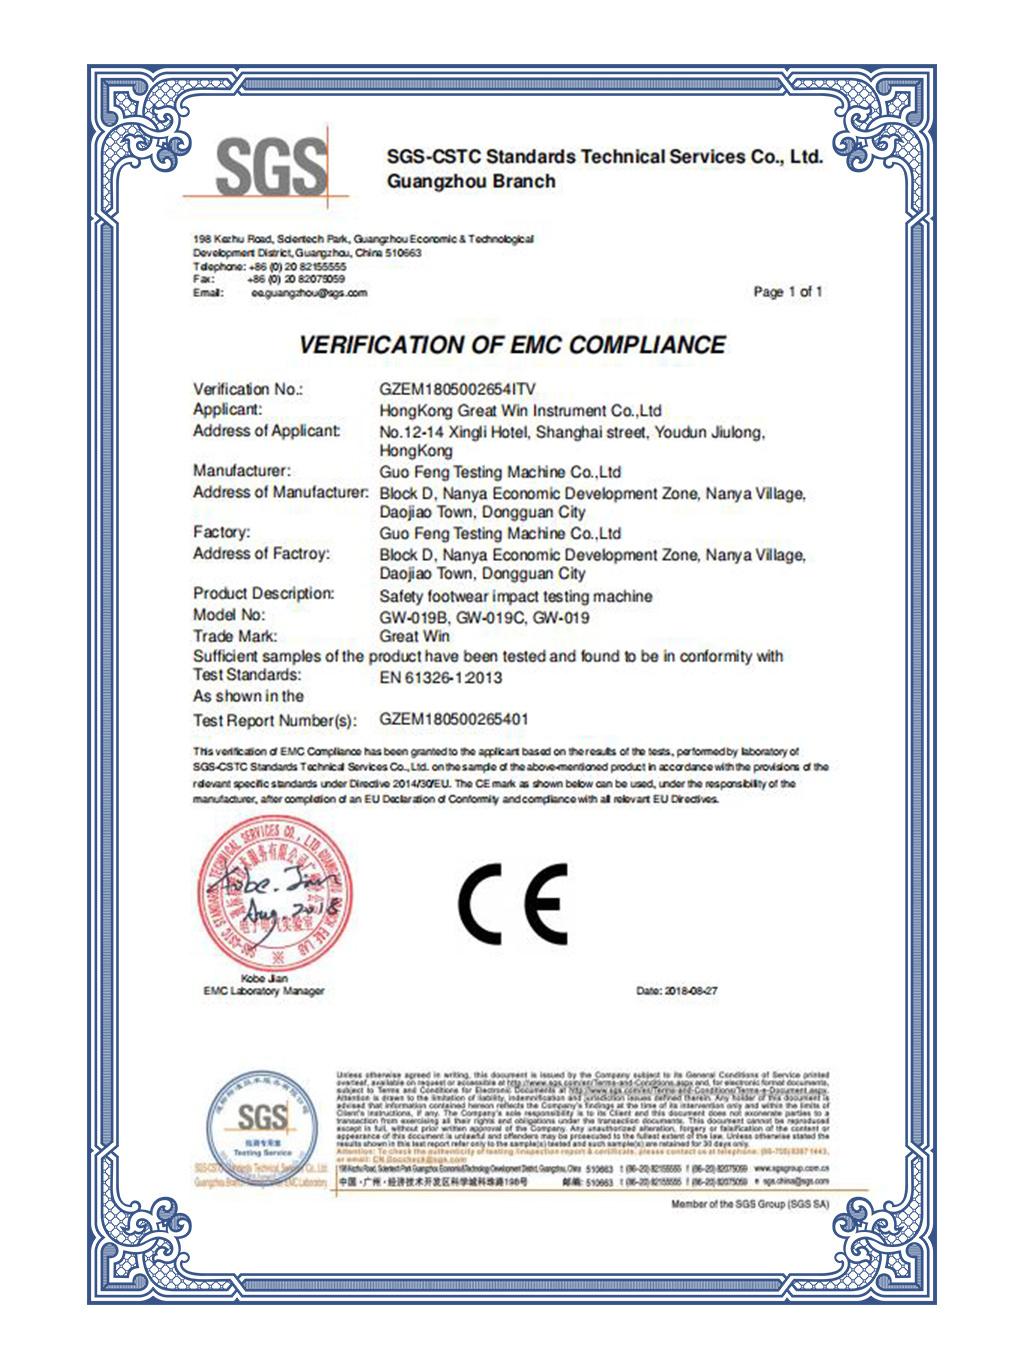 Maquina / Equipo De Prueba De Impacto De La Puntera De Seguridad De Alta Calidad Con Certificado Ce (GW-019C)